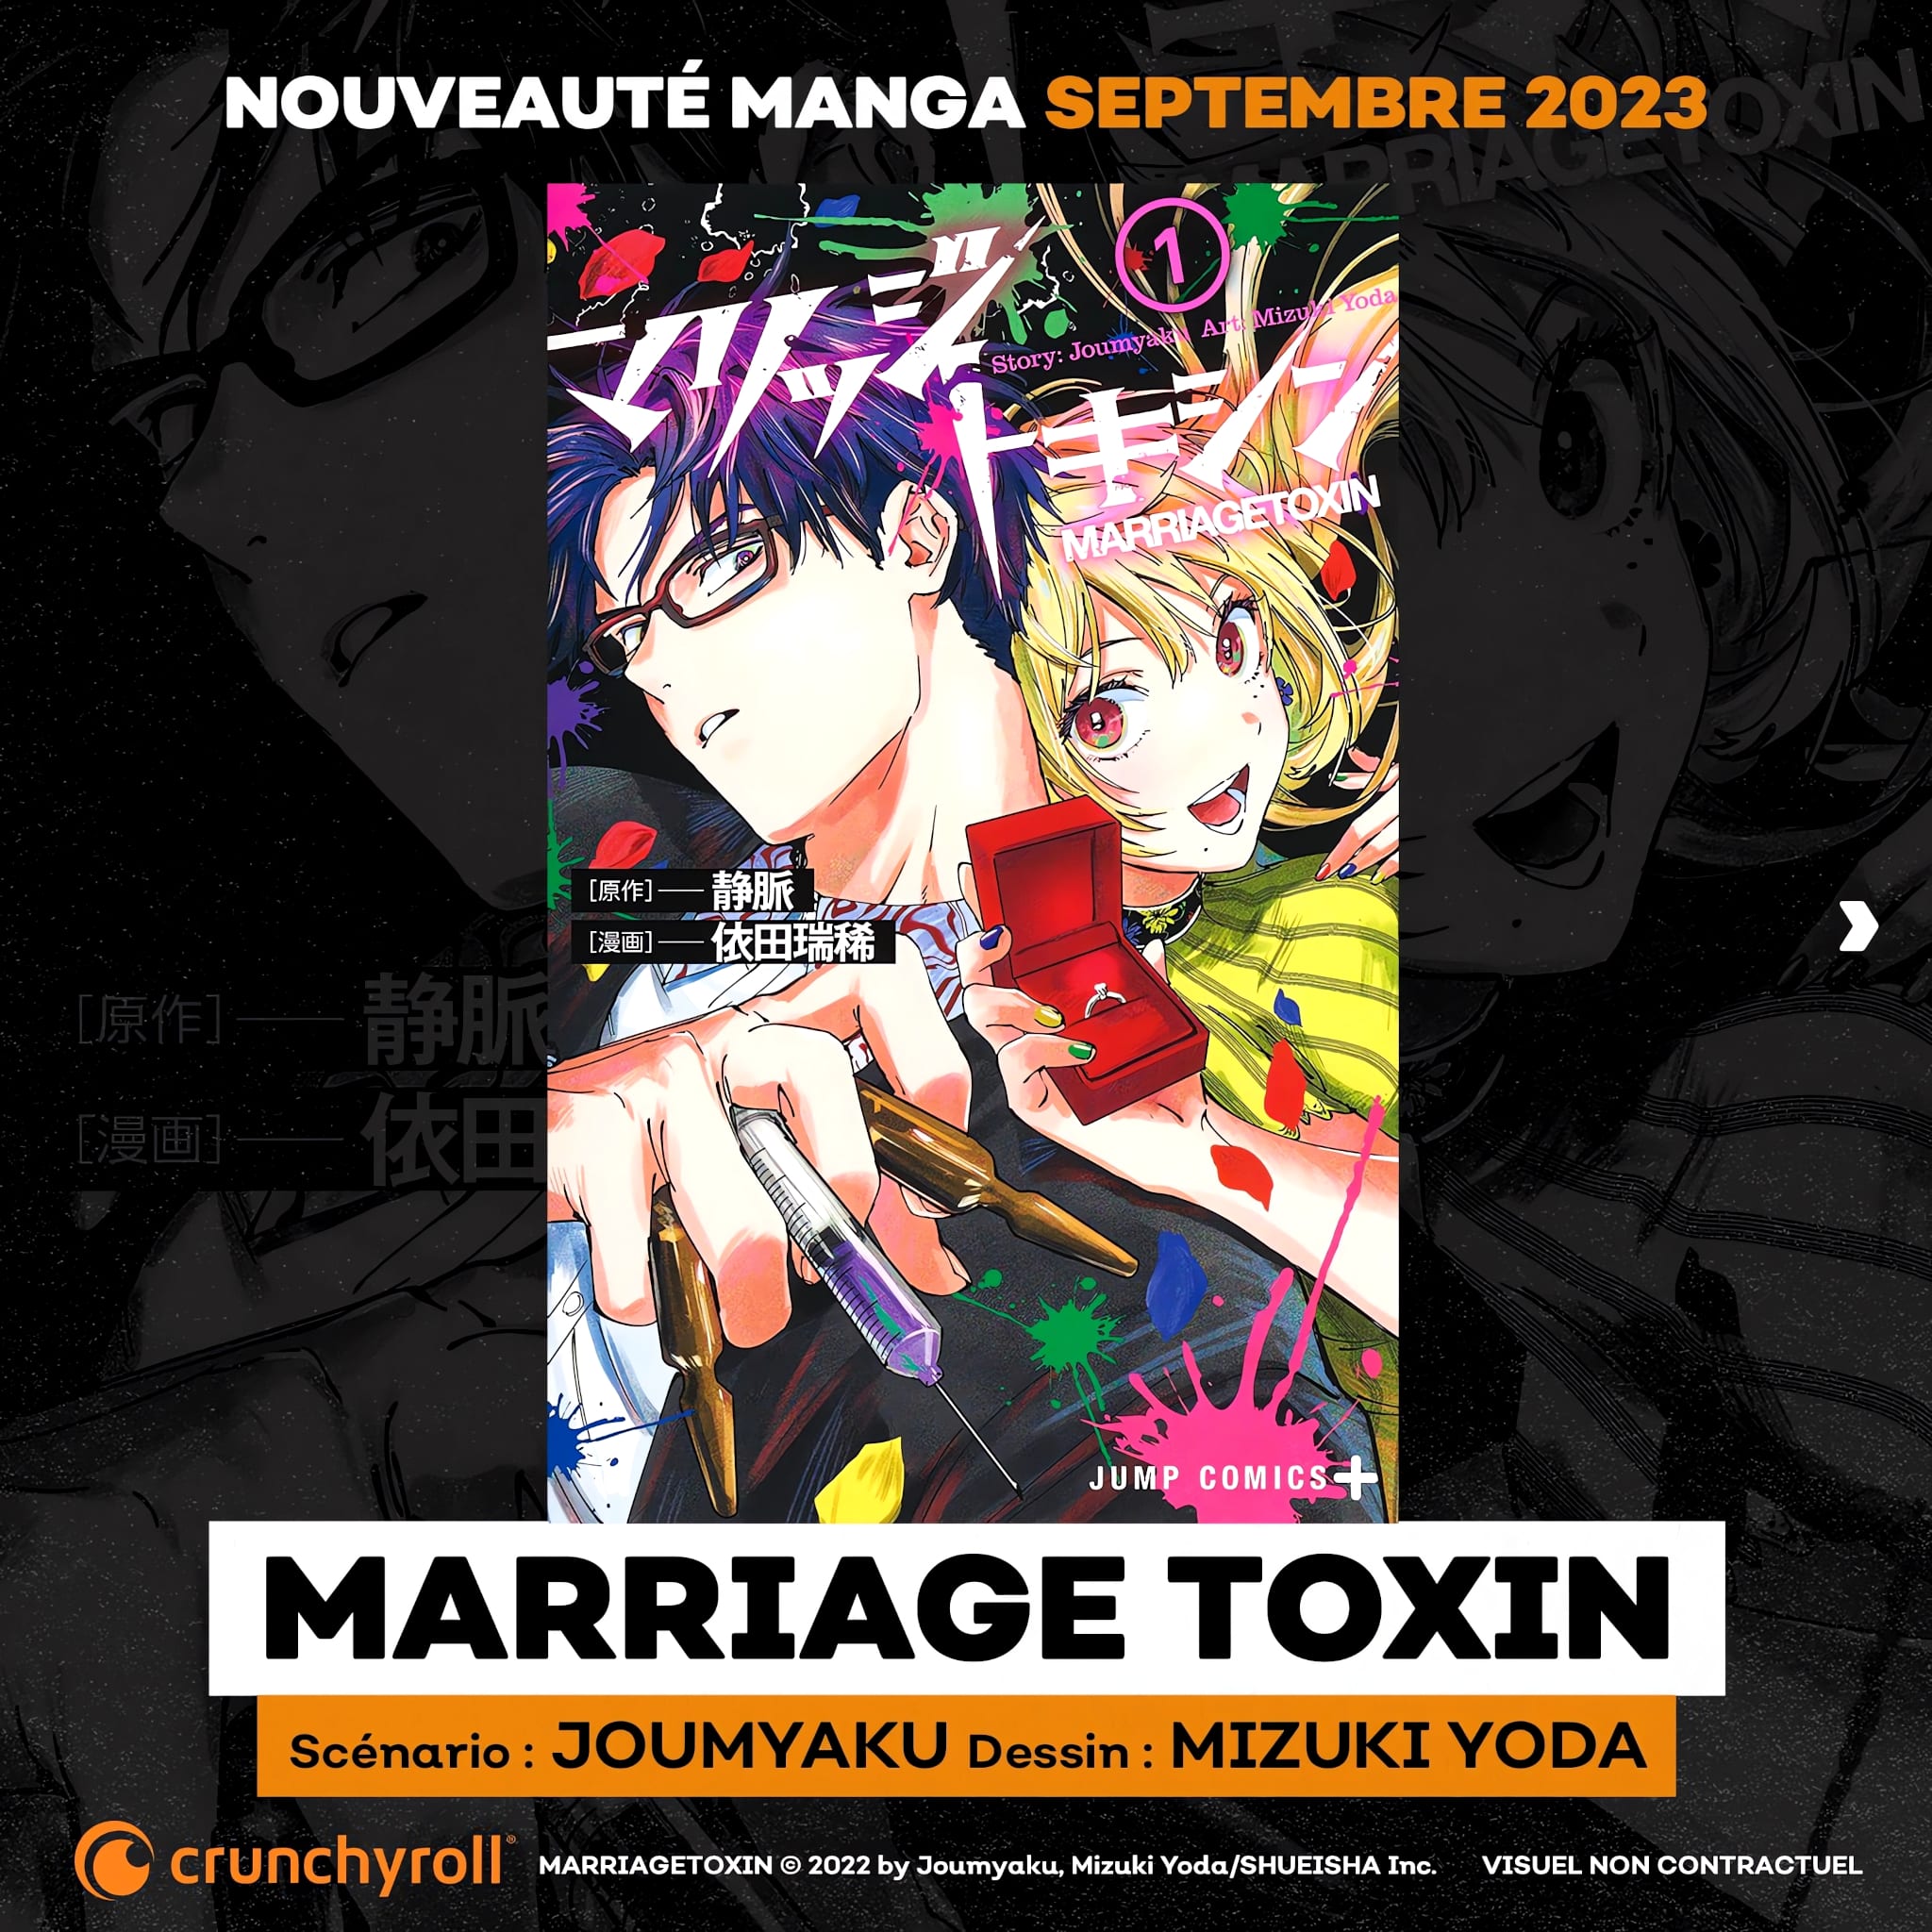 Annonce de la date de sortie en France du manga Marriage Toxin aux éditions Crunchyroll